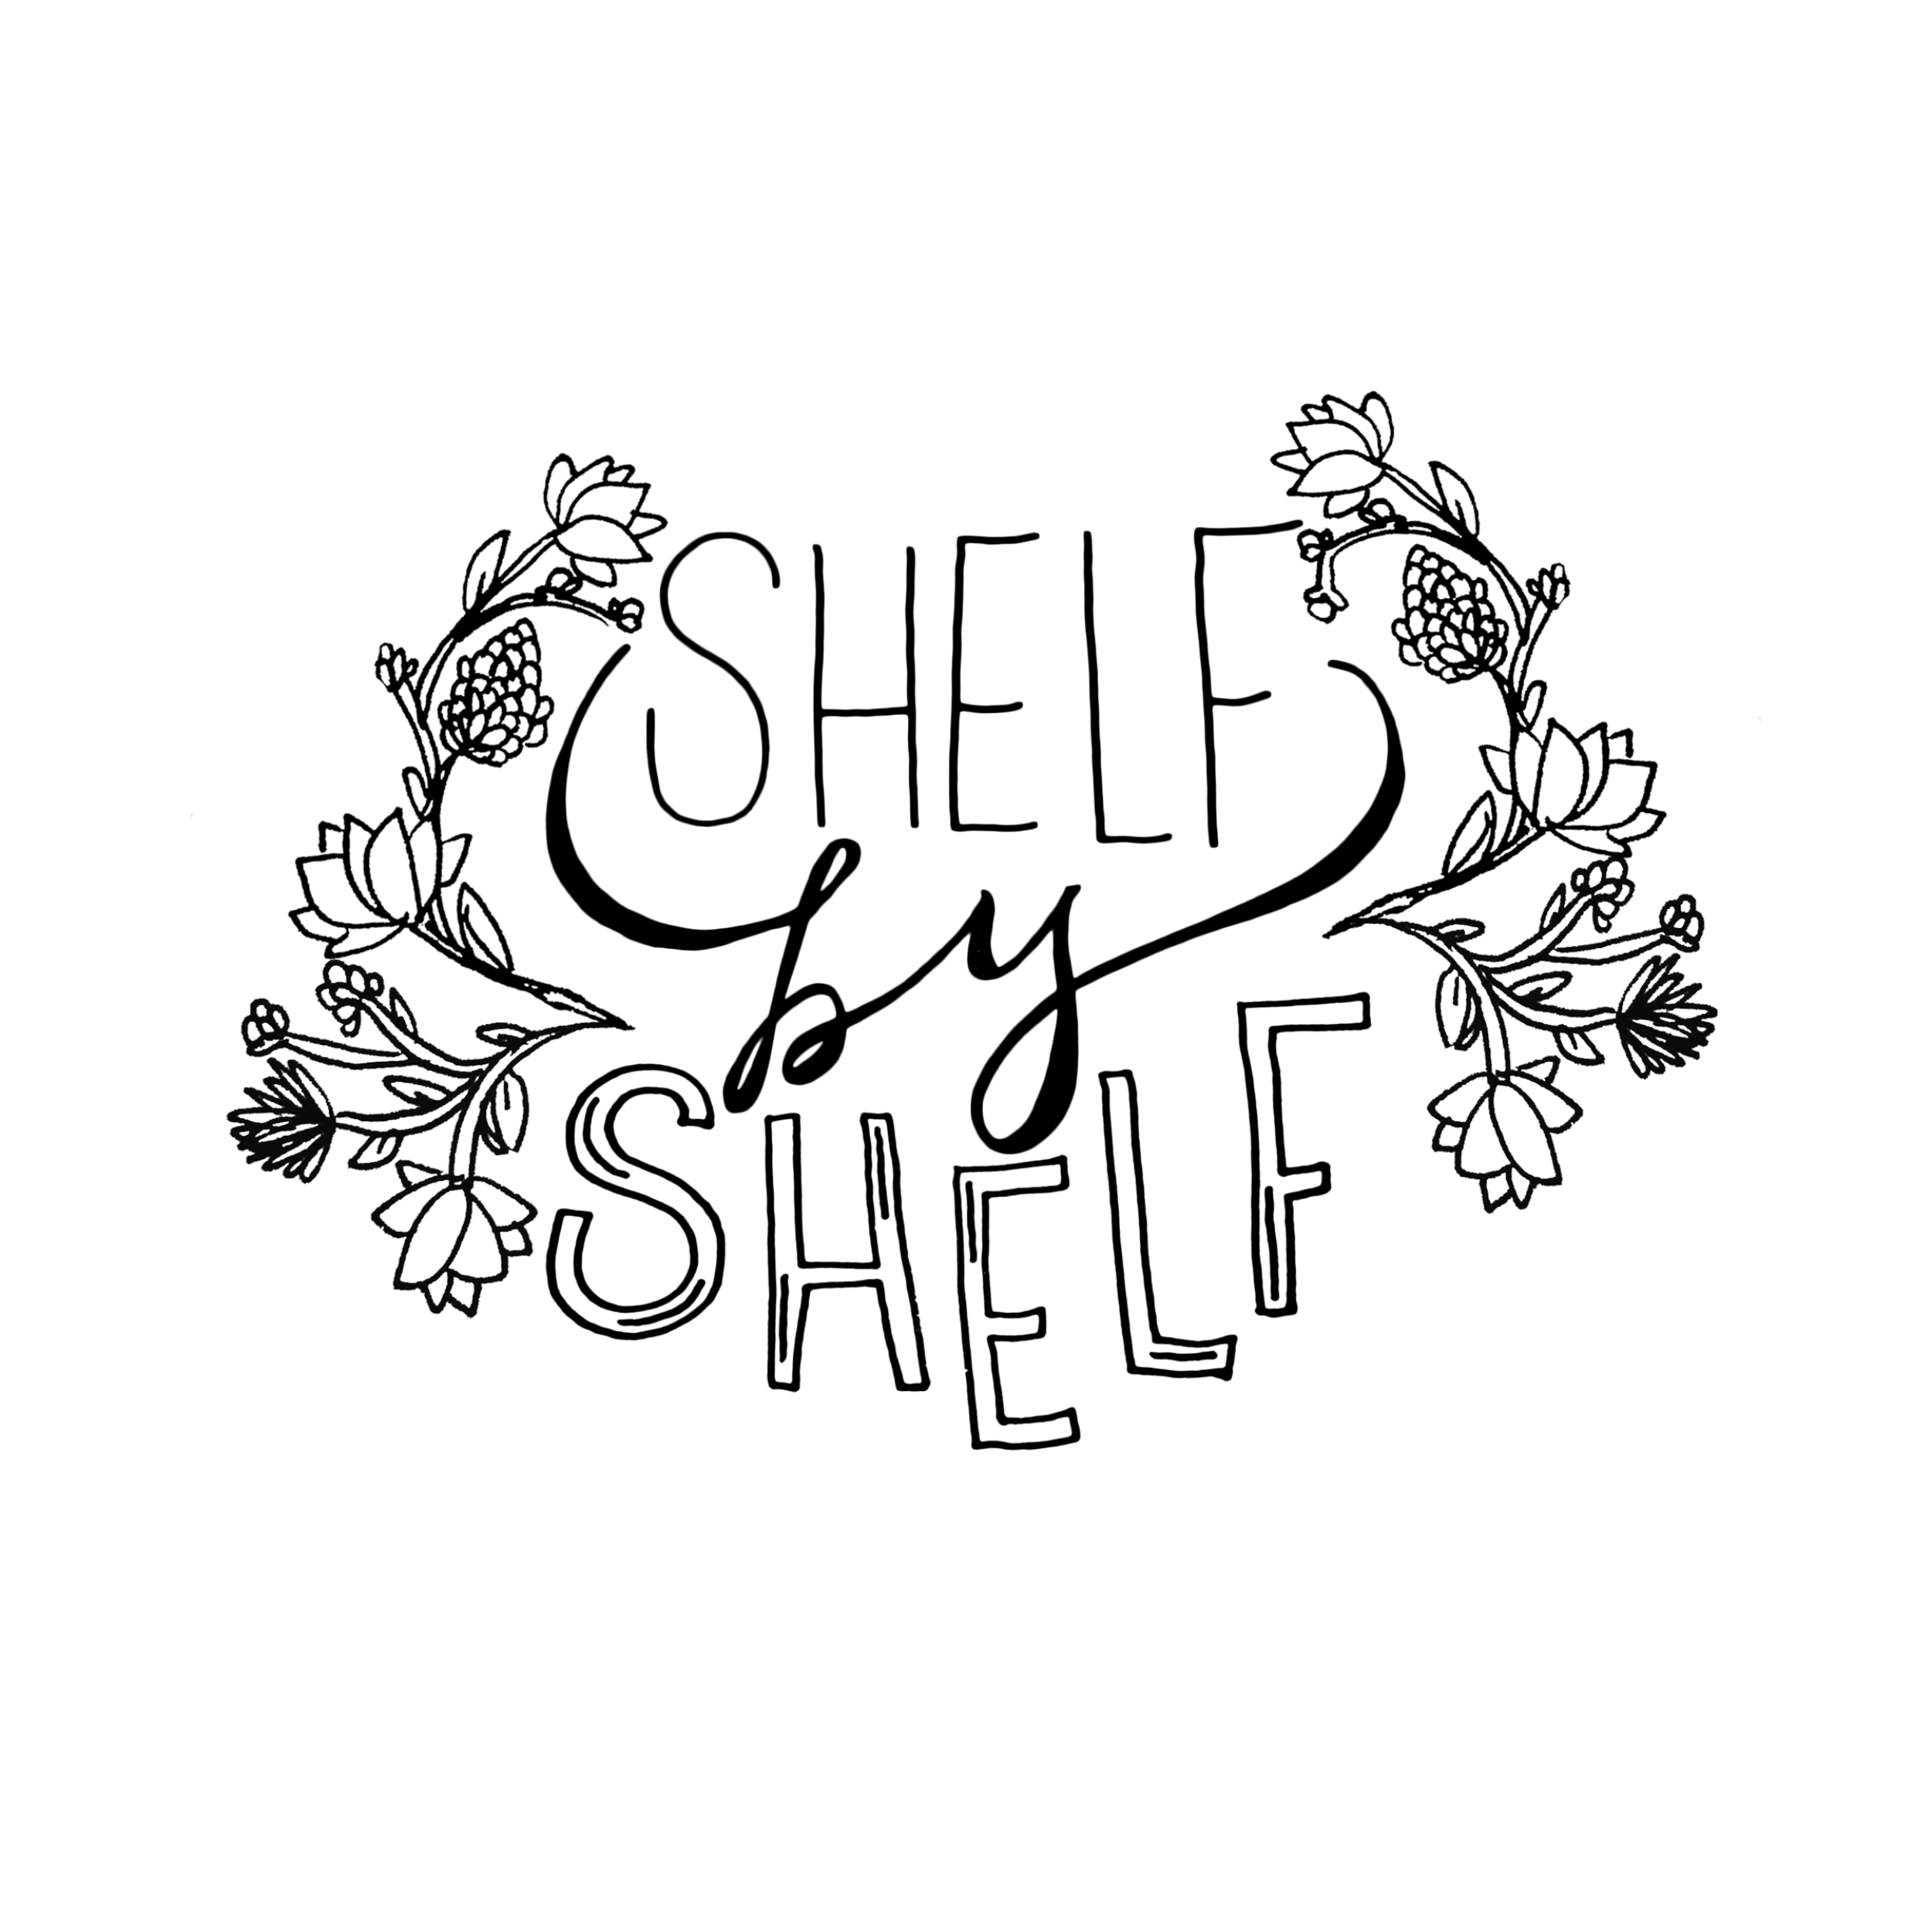 Shelf By Shelf